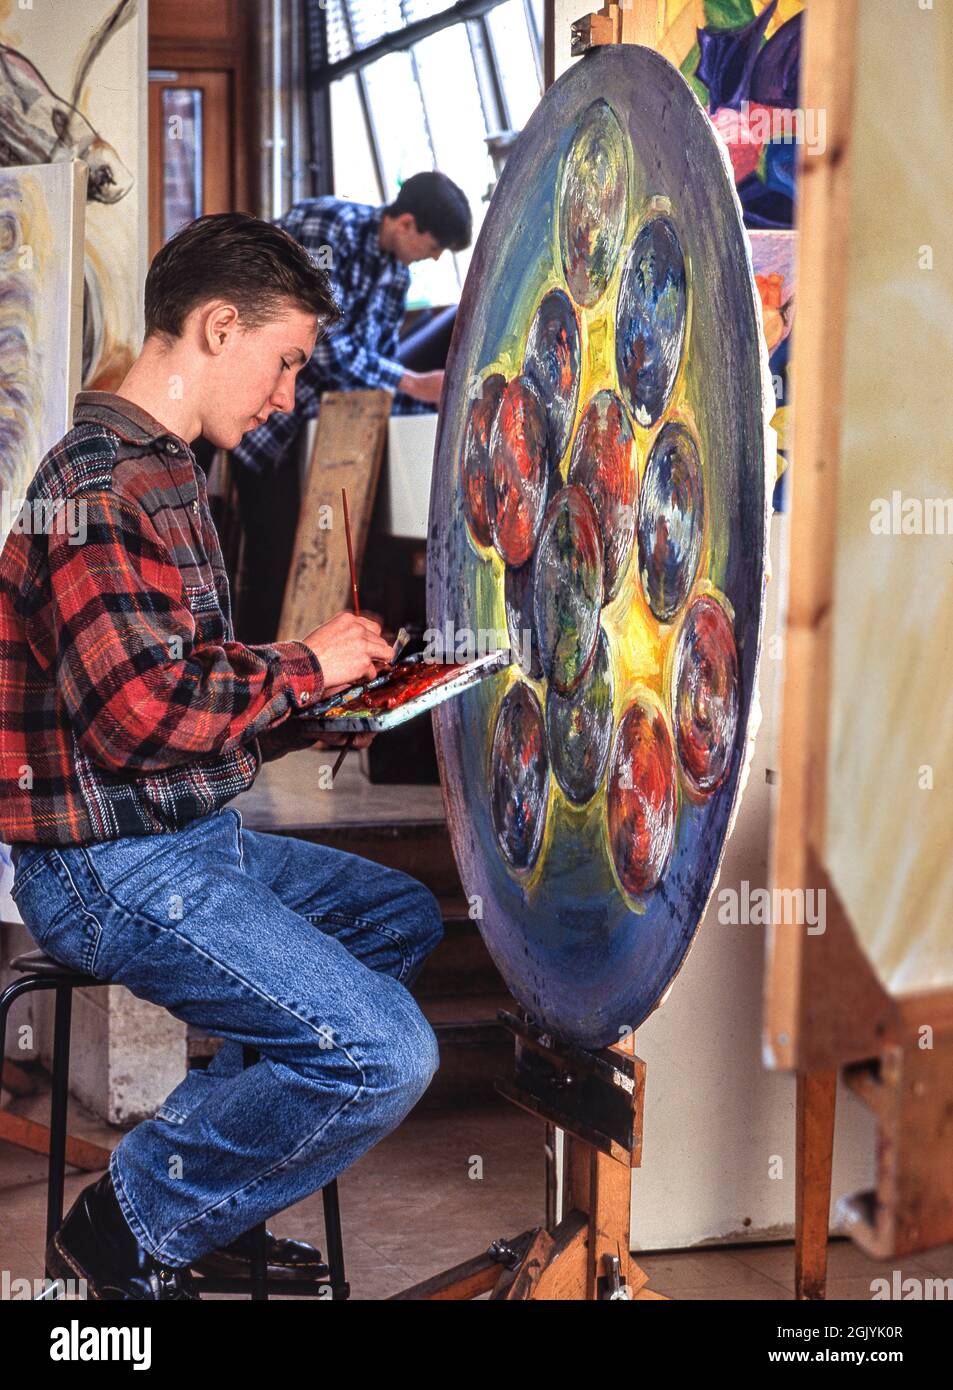 Classe d'art avec 15-17ans secondaire secondaire secondaire secondaire garçon élève étudiant mettant la finition de ses œuvres d'art circulaires modernes expressives peintes dans les huiles Banque D'Images